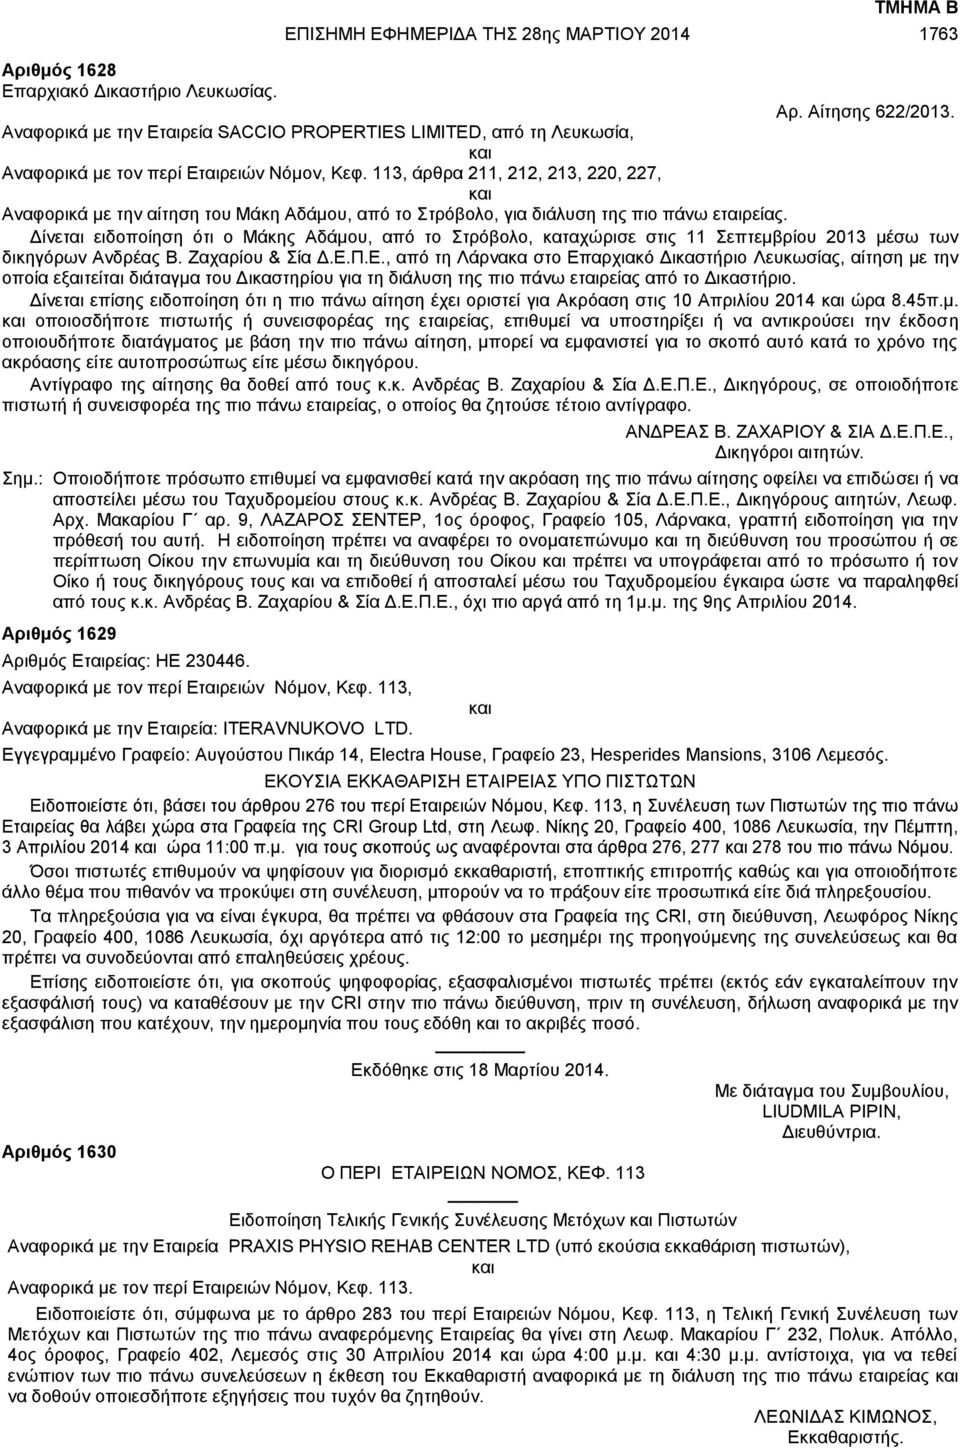 113, άρθρα 211, 212, 213, 220, 227, και Αναφορικά με την αίτηση του Μάκη Αδάμου, από το Στρόβολο, για διάλυση της πιο πάνω εταιρείας.